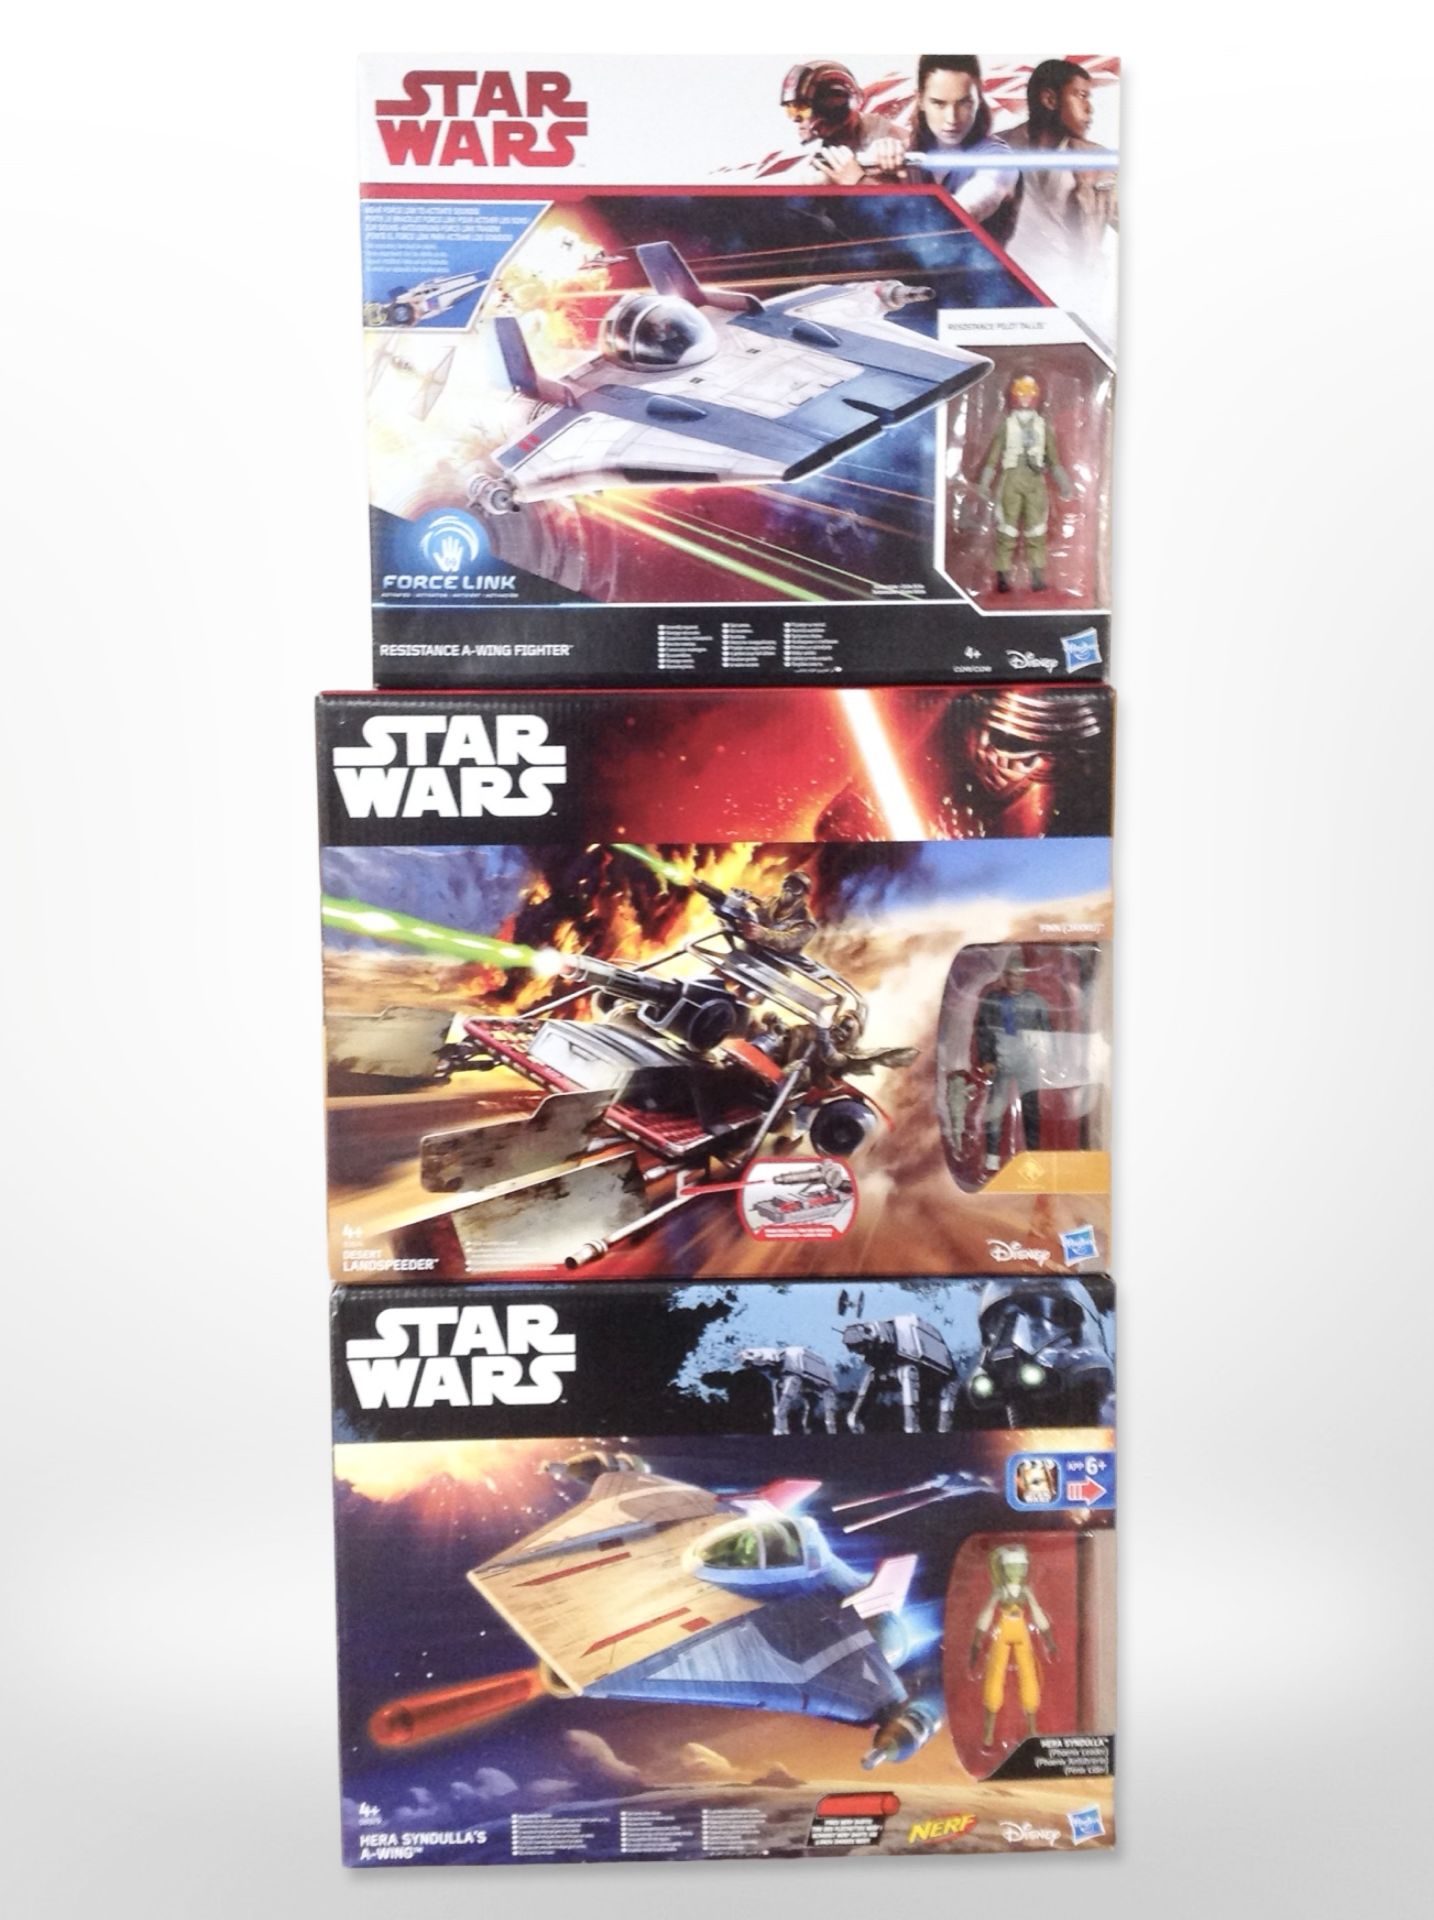 Three Hasbro Disney Star Wars models, Resistance A-Wing Fighter, Desert Landspeeder,